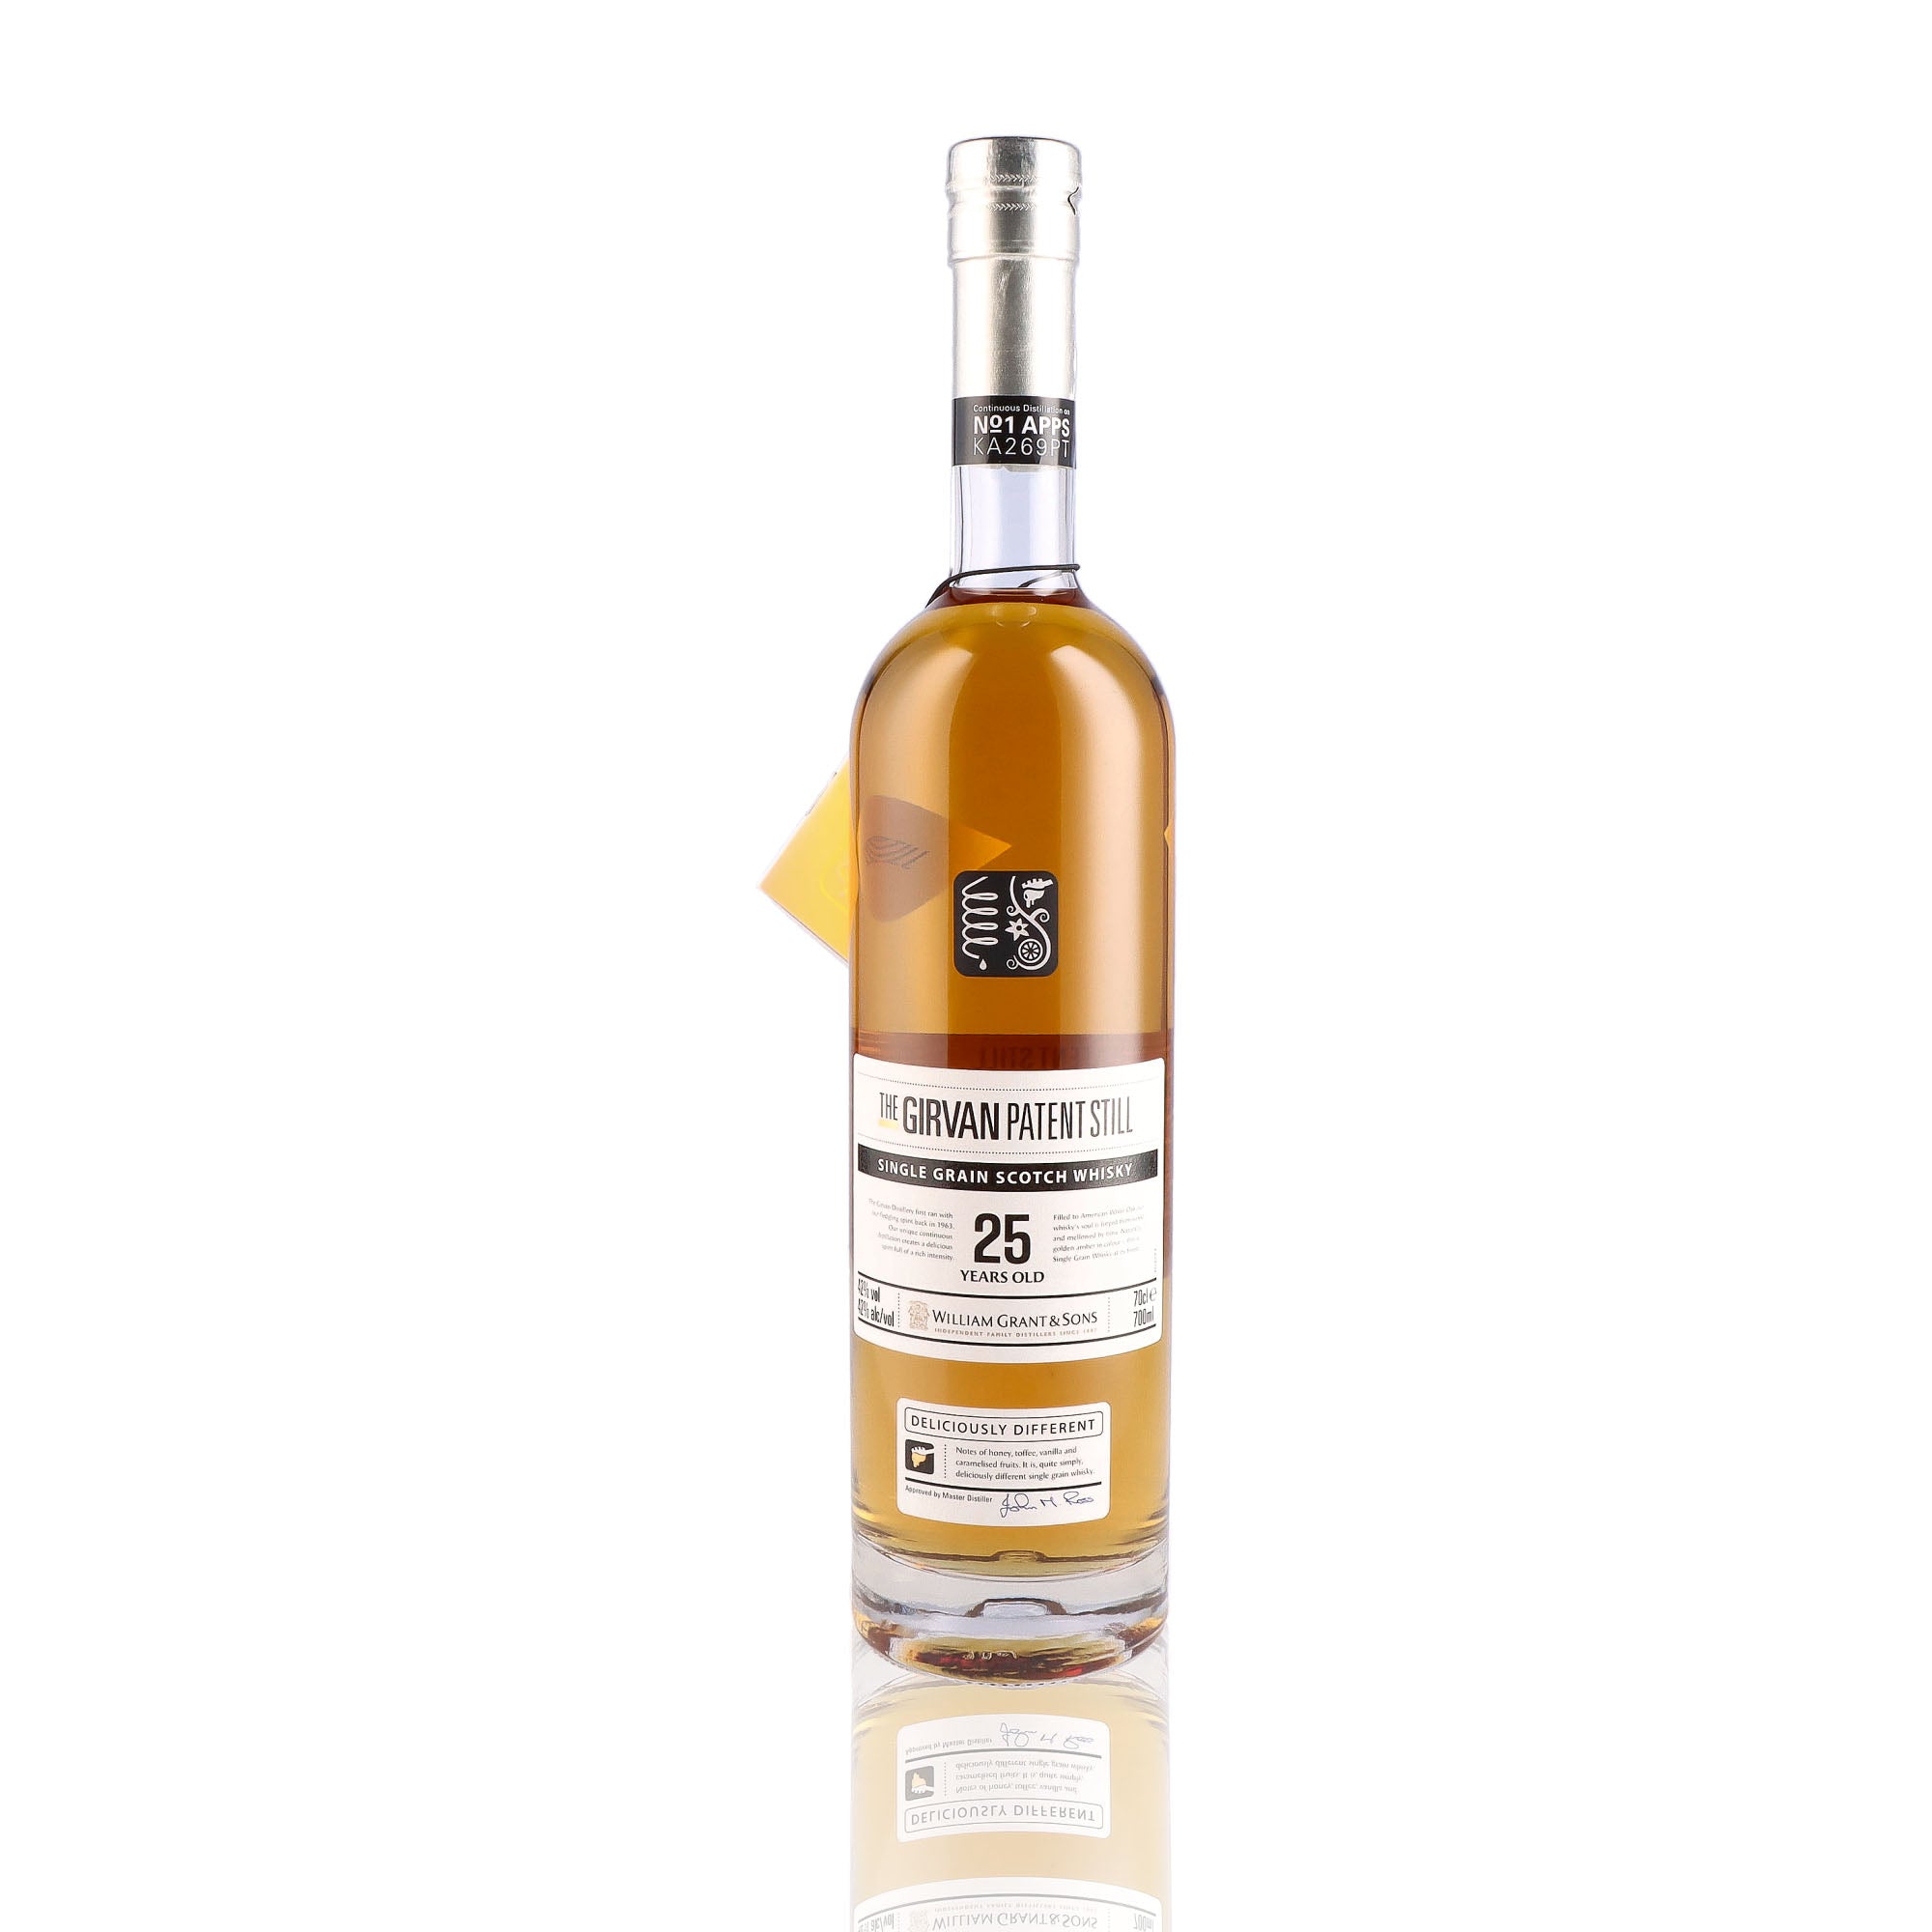 Une bouteille de Scotch Whisky Single Grain de la marque Girvan, 25 ans d'âge.